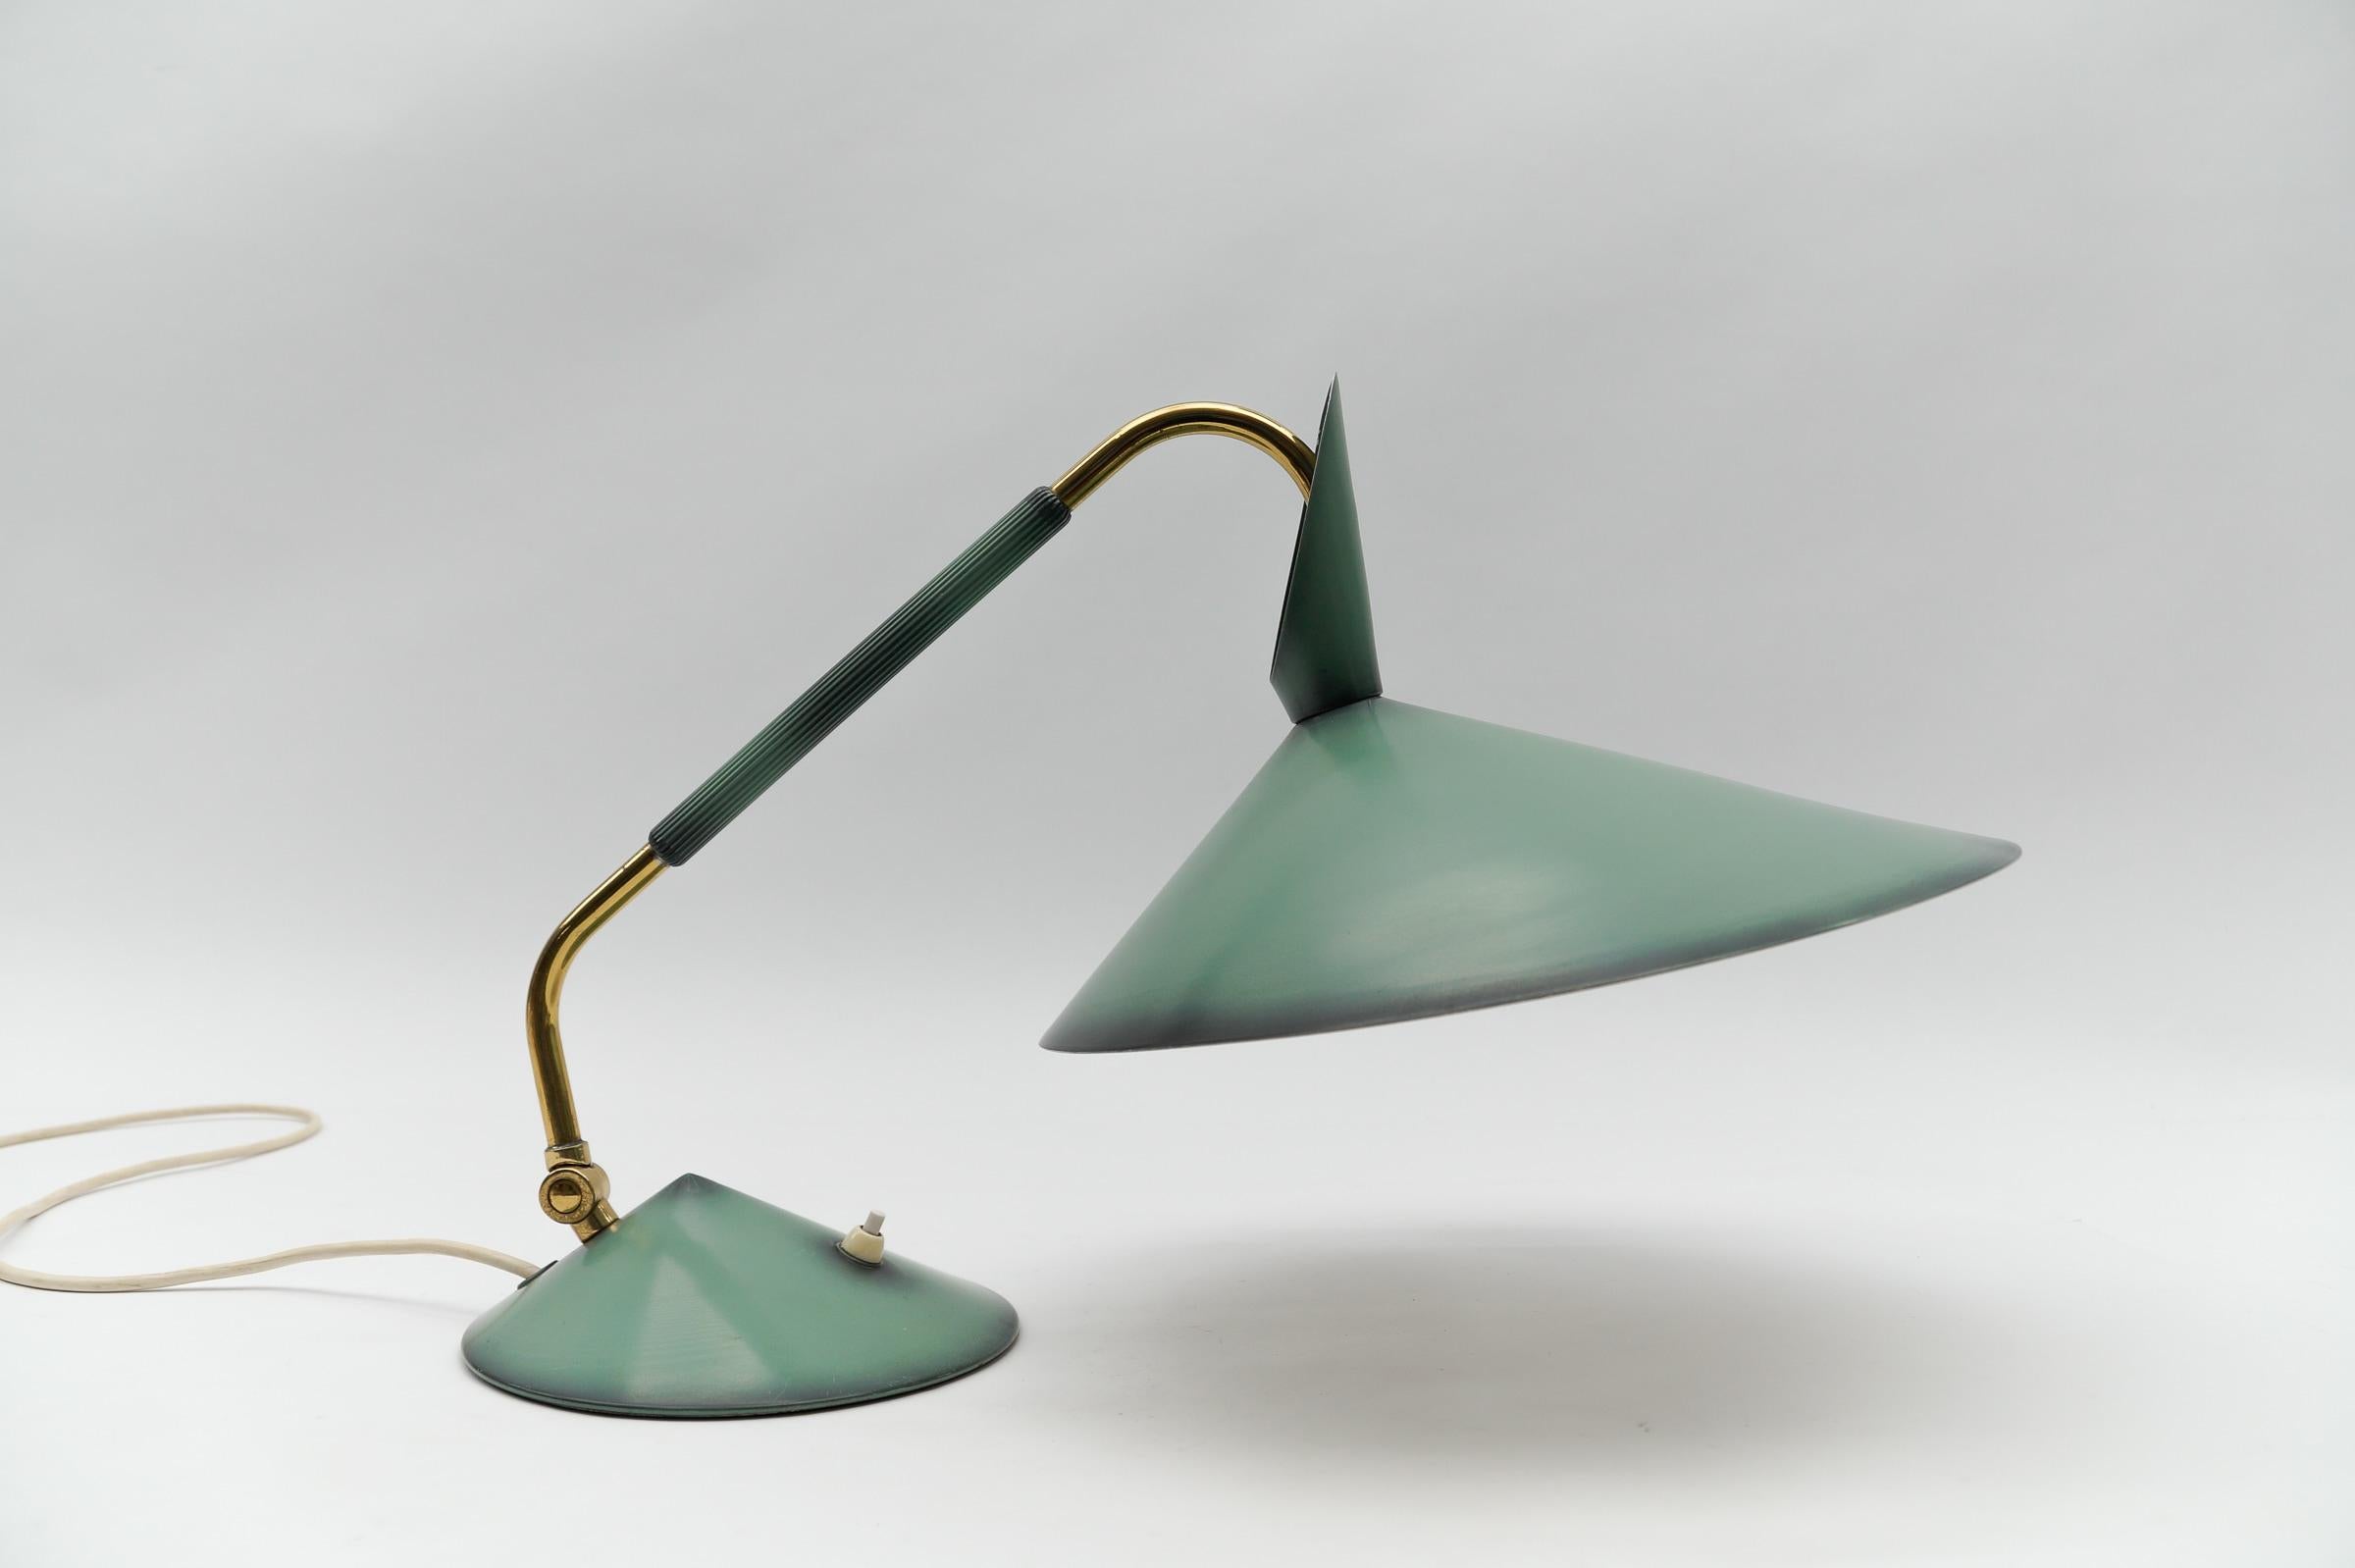 Moderner grüner Tisch aus der Jahrhundertmitte, 1950er Jahre

Die Lampe benötigt 1 x E27 / E26 Edison Schraube fit Glühbirne, ist verkabelt, und in funktionsfähigem Zustand. Er läuft sowohl mit 110 als auch mit 230 Volt.

Sehr elegant und niedlich